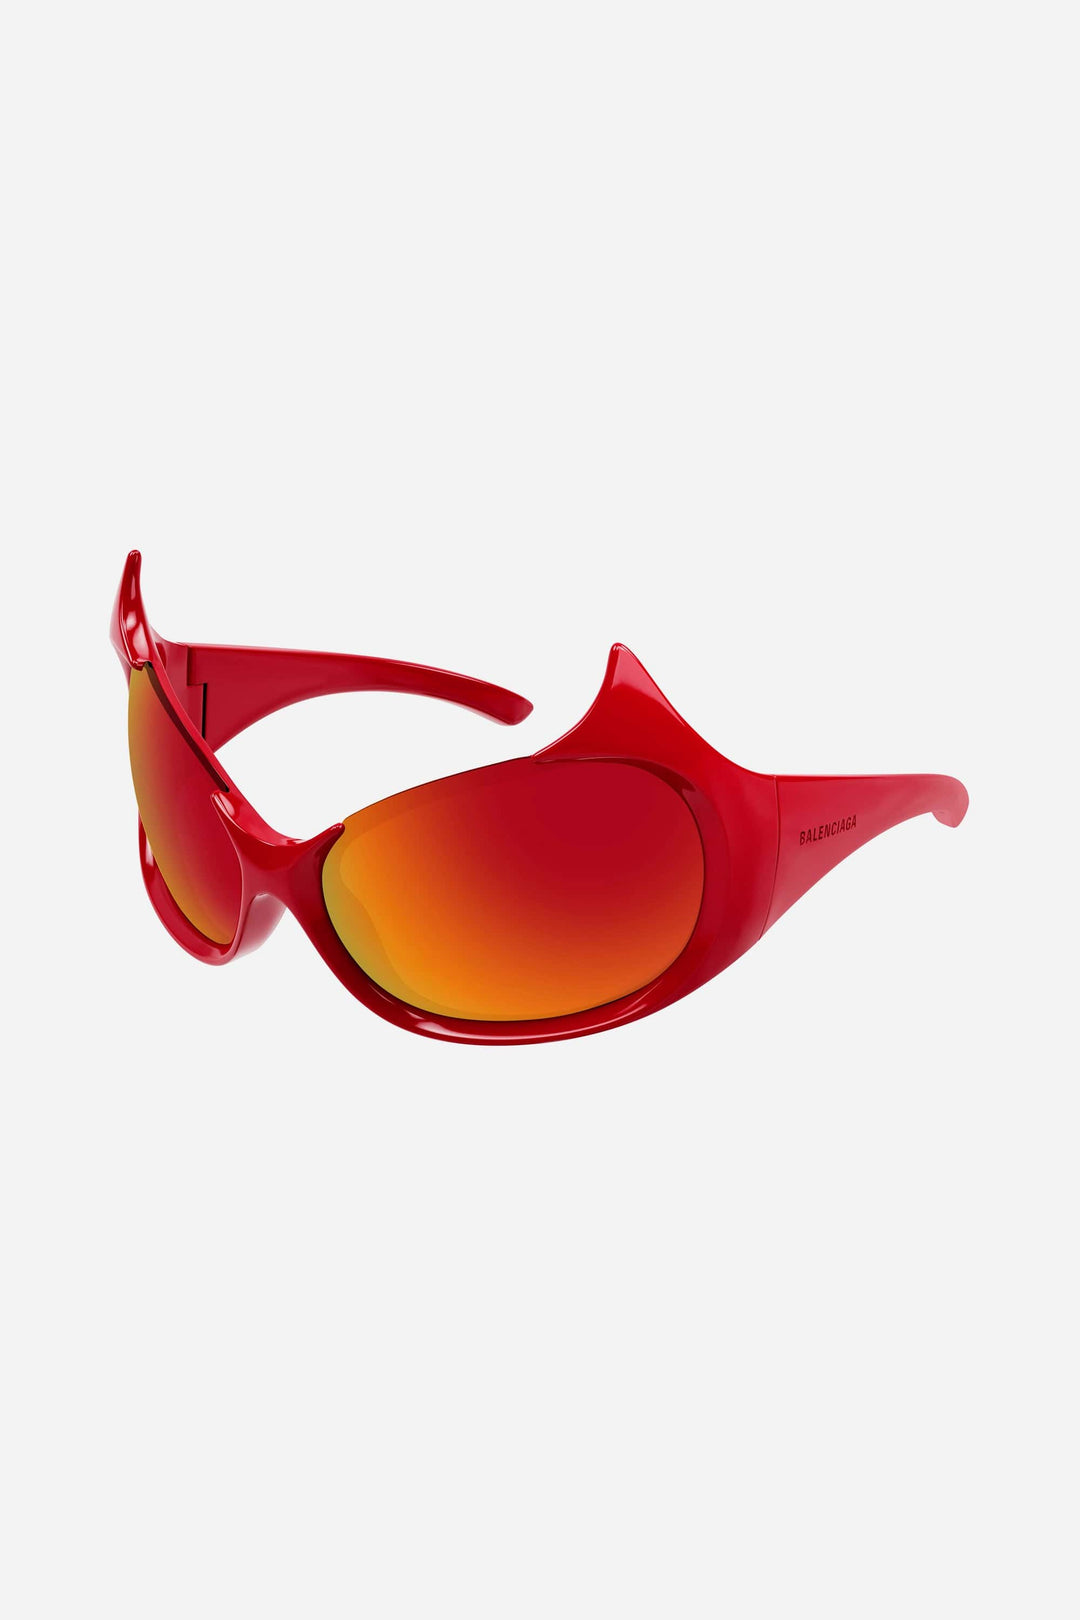 Balenciaga GOTHAM cat sunglasses in red - Eyewear Club